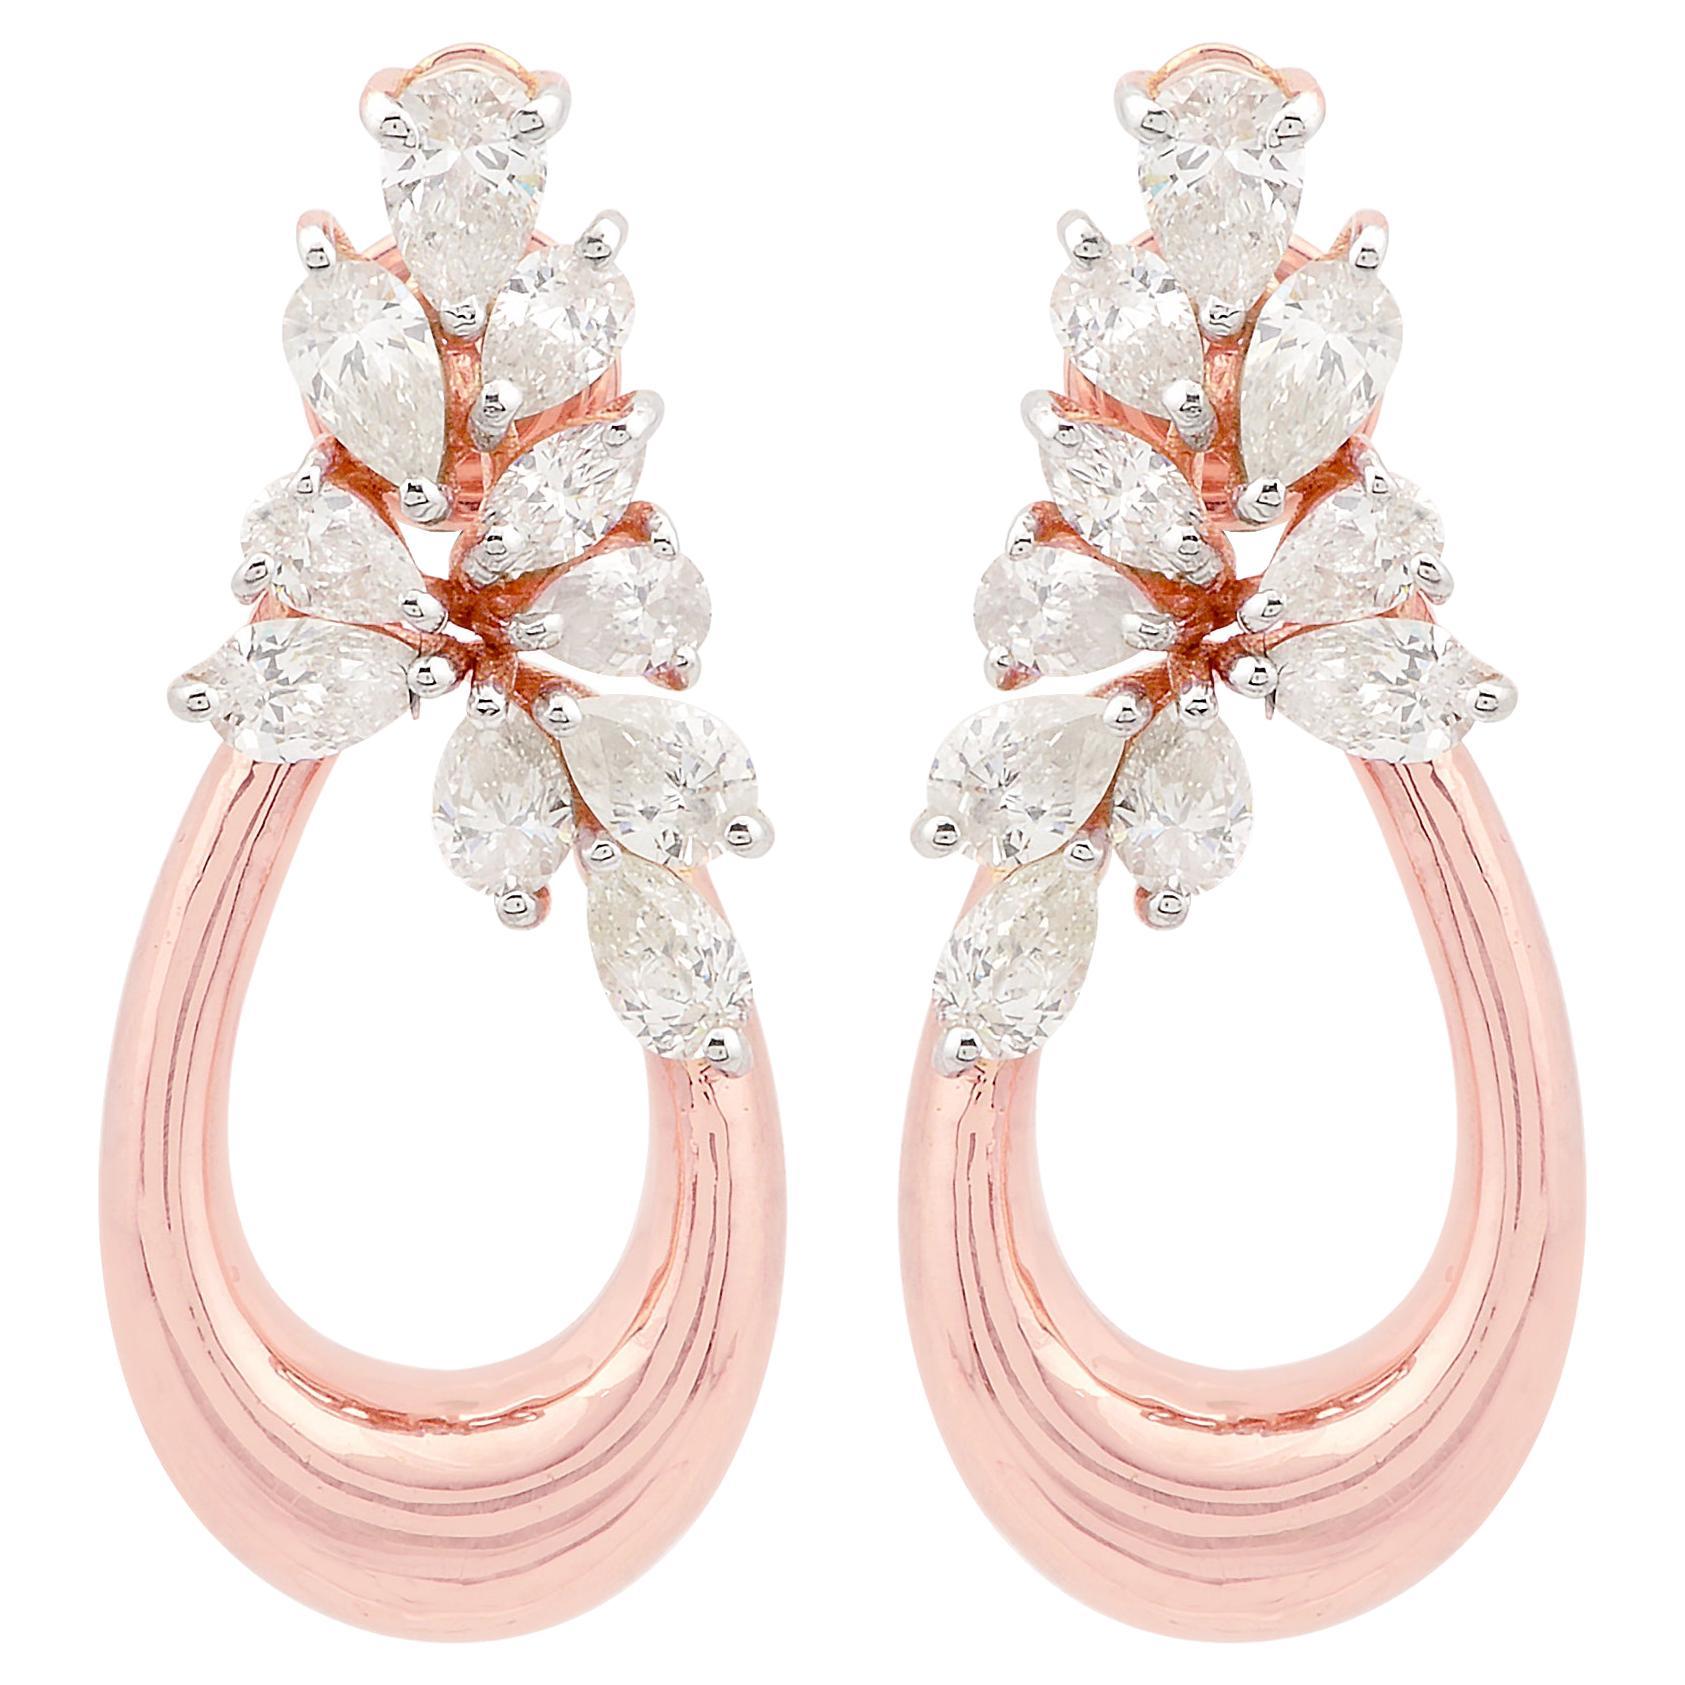 Natural SI Clarity HI Color Multi Diamond Dangle Earrings 18 Karat Rose Gold